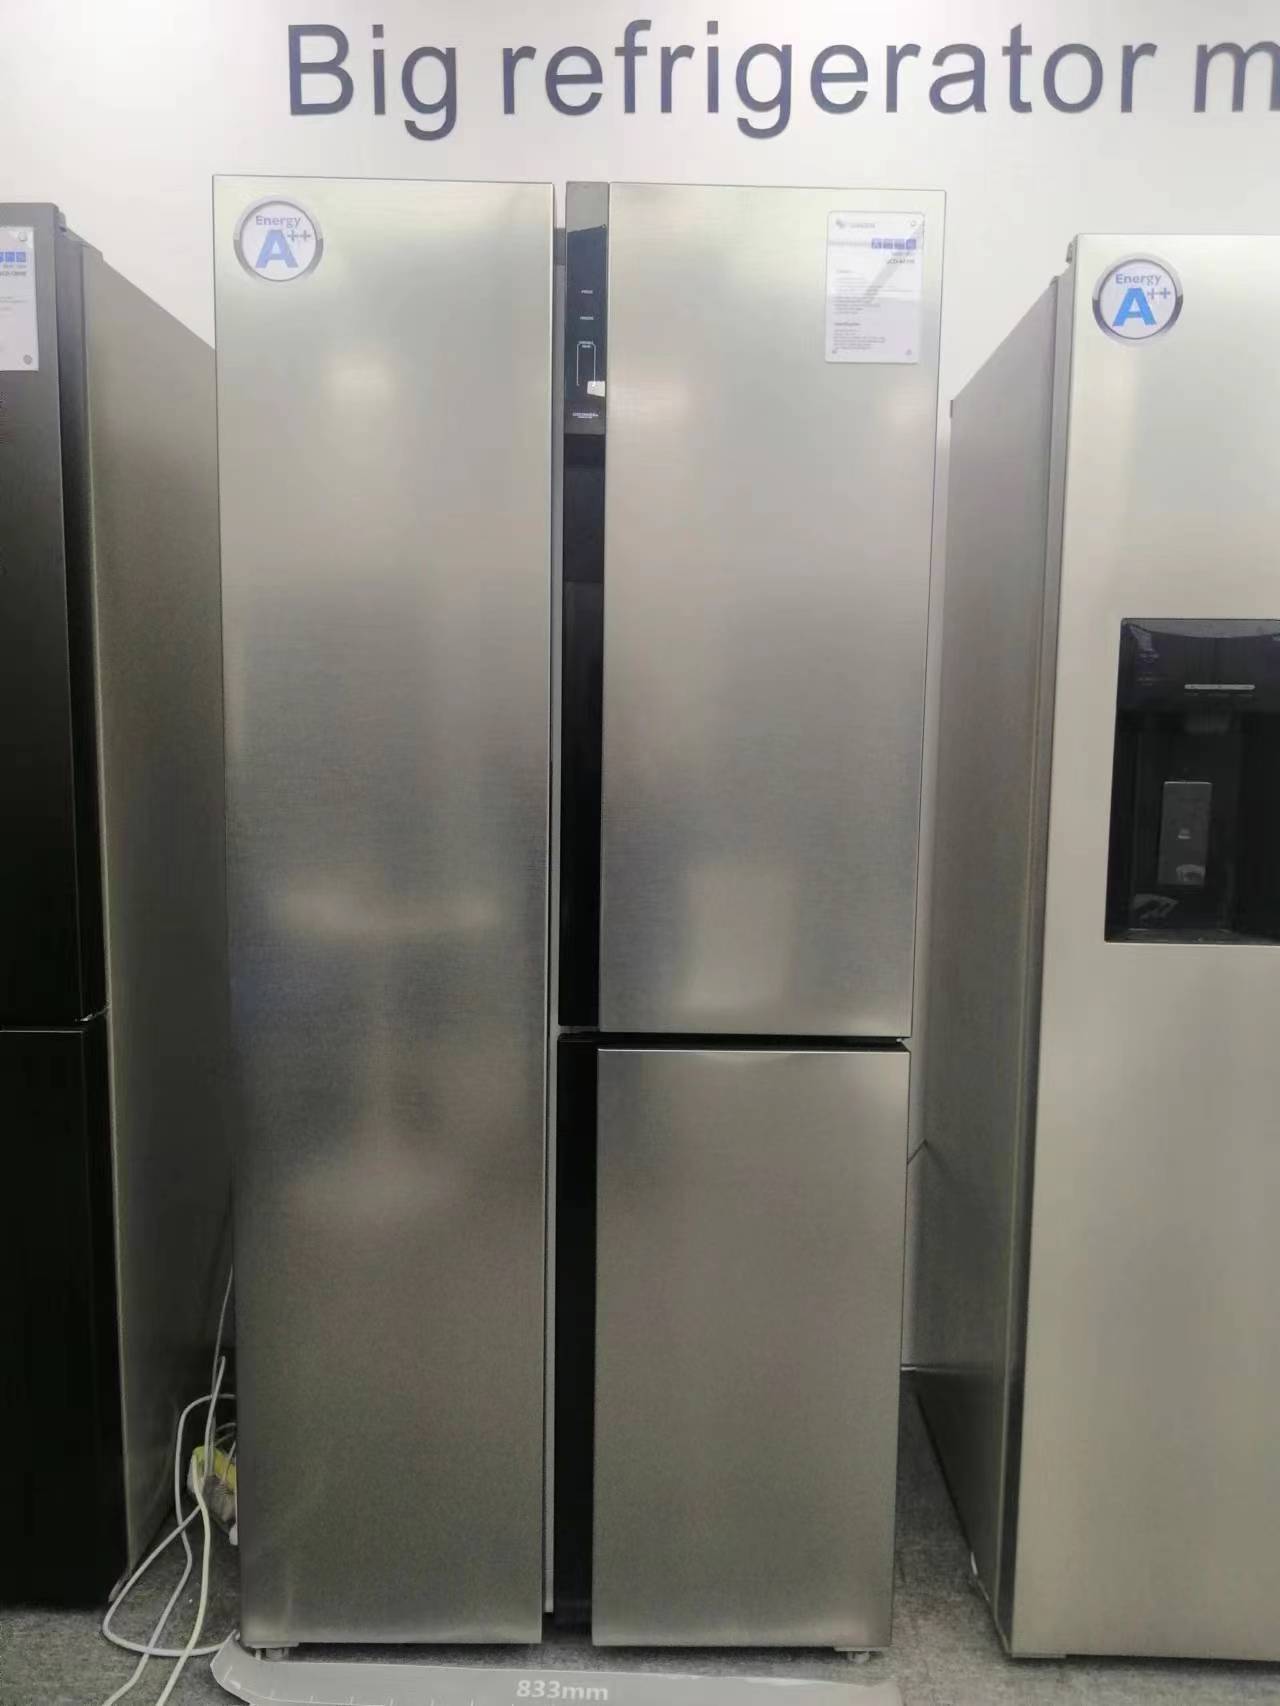 T door refrigerator model number BCD-443W